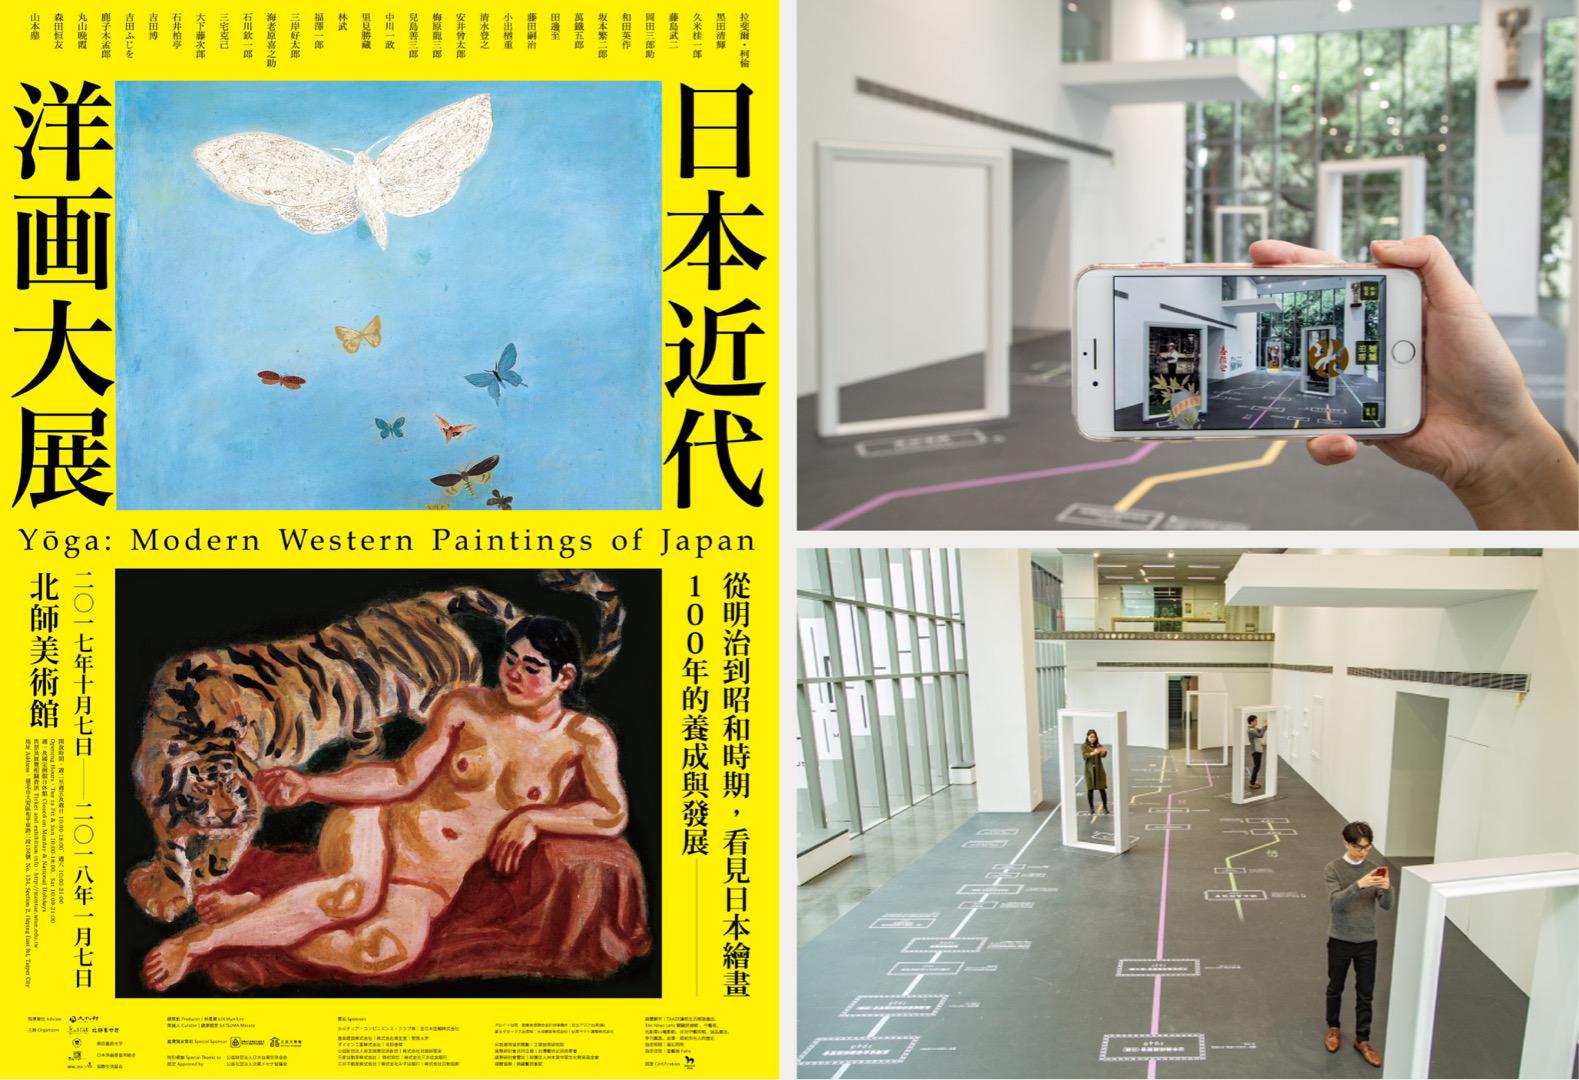 王一設計, king one, 日本近代洋画大展, interactive art, 數位互動藝術, AR體驗, 互動藝術